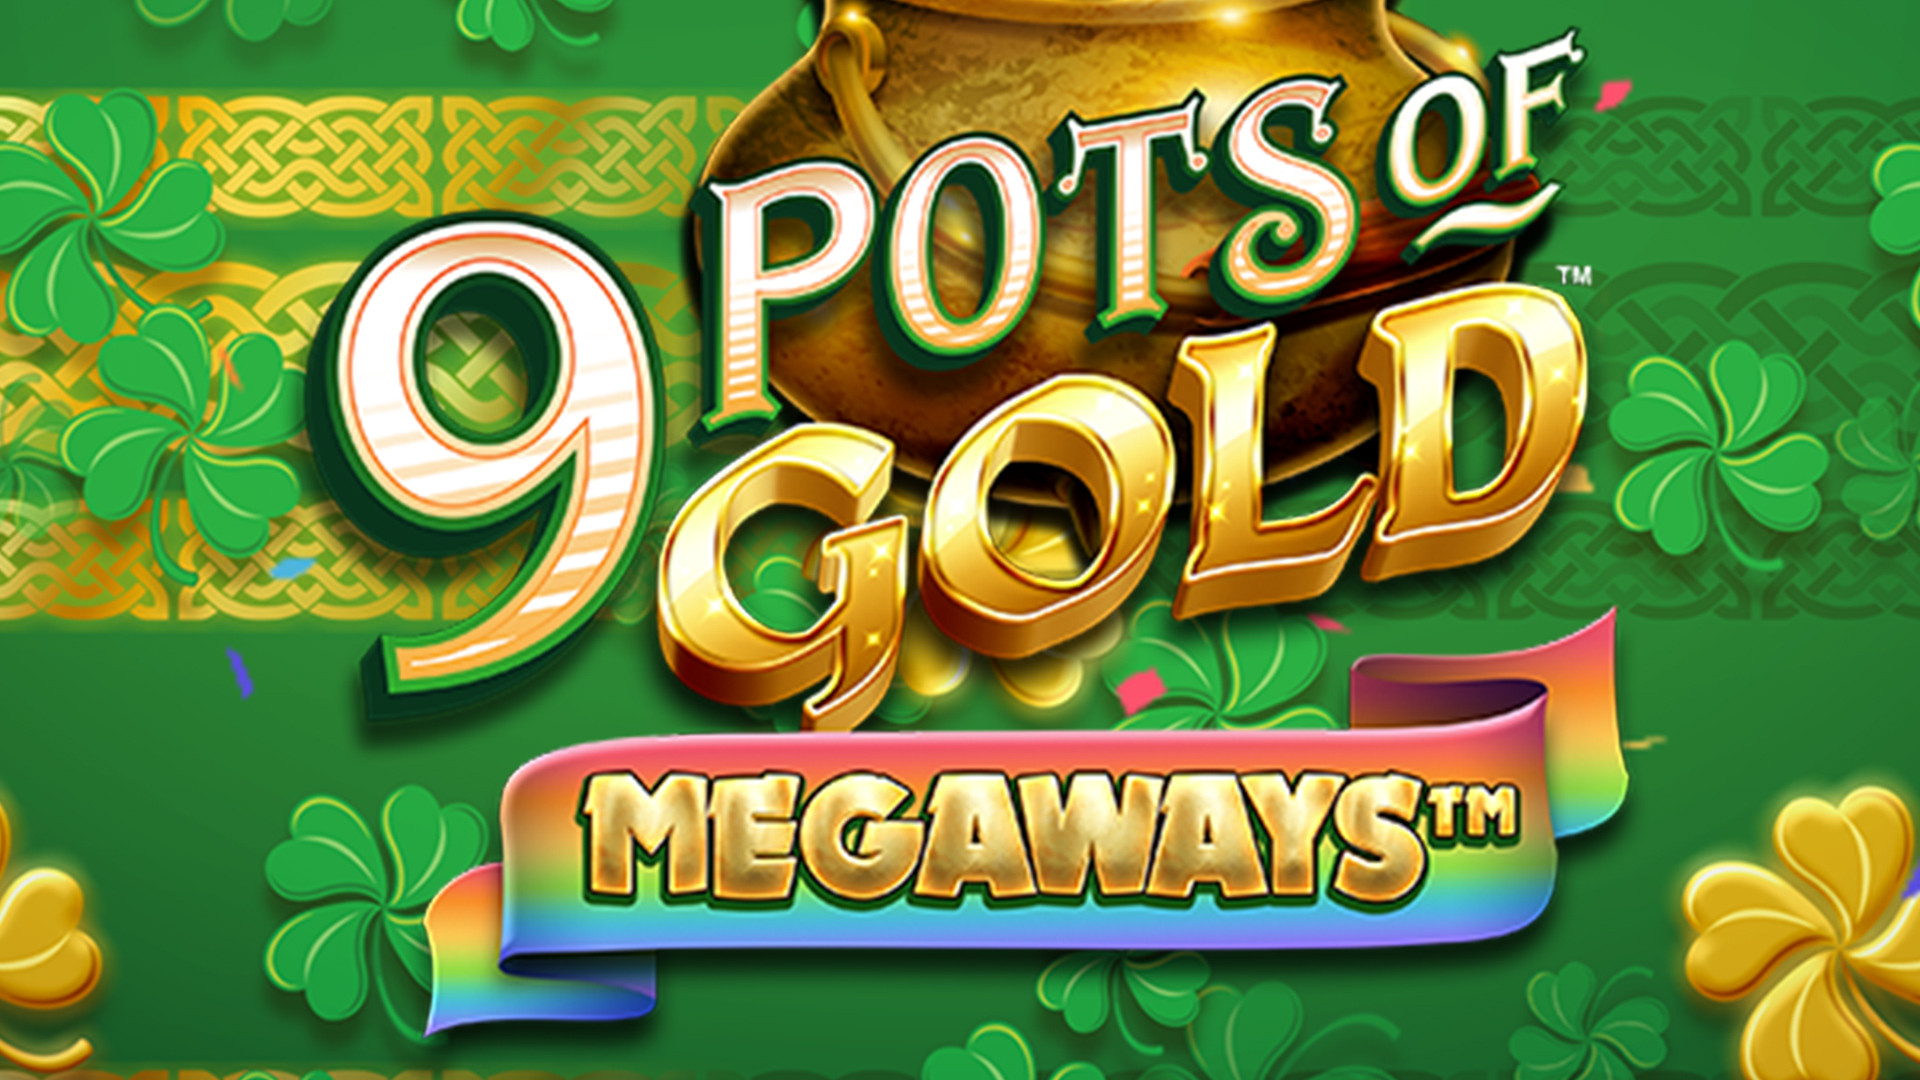 9 Pots of Gold MEGAWAYS